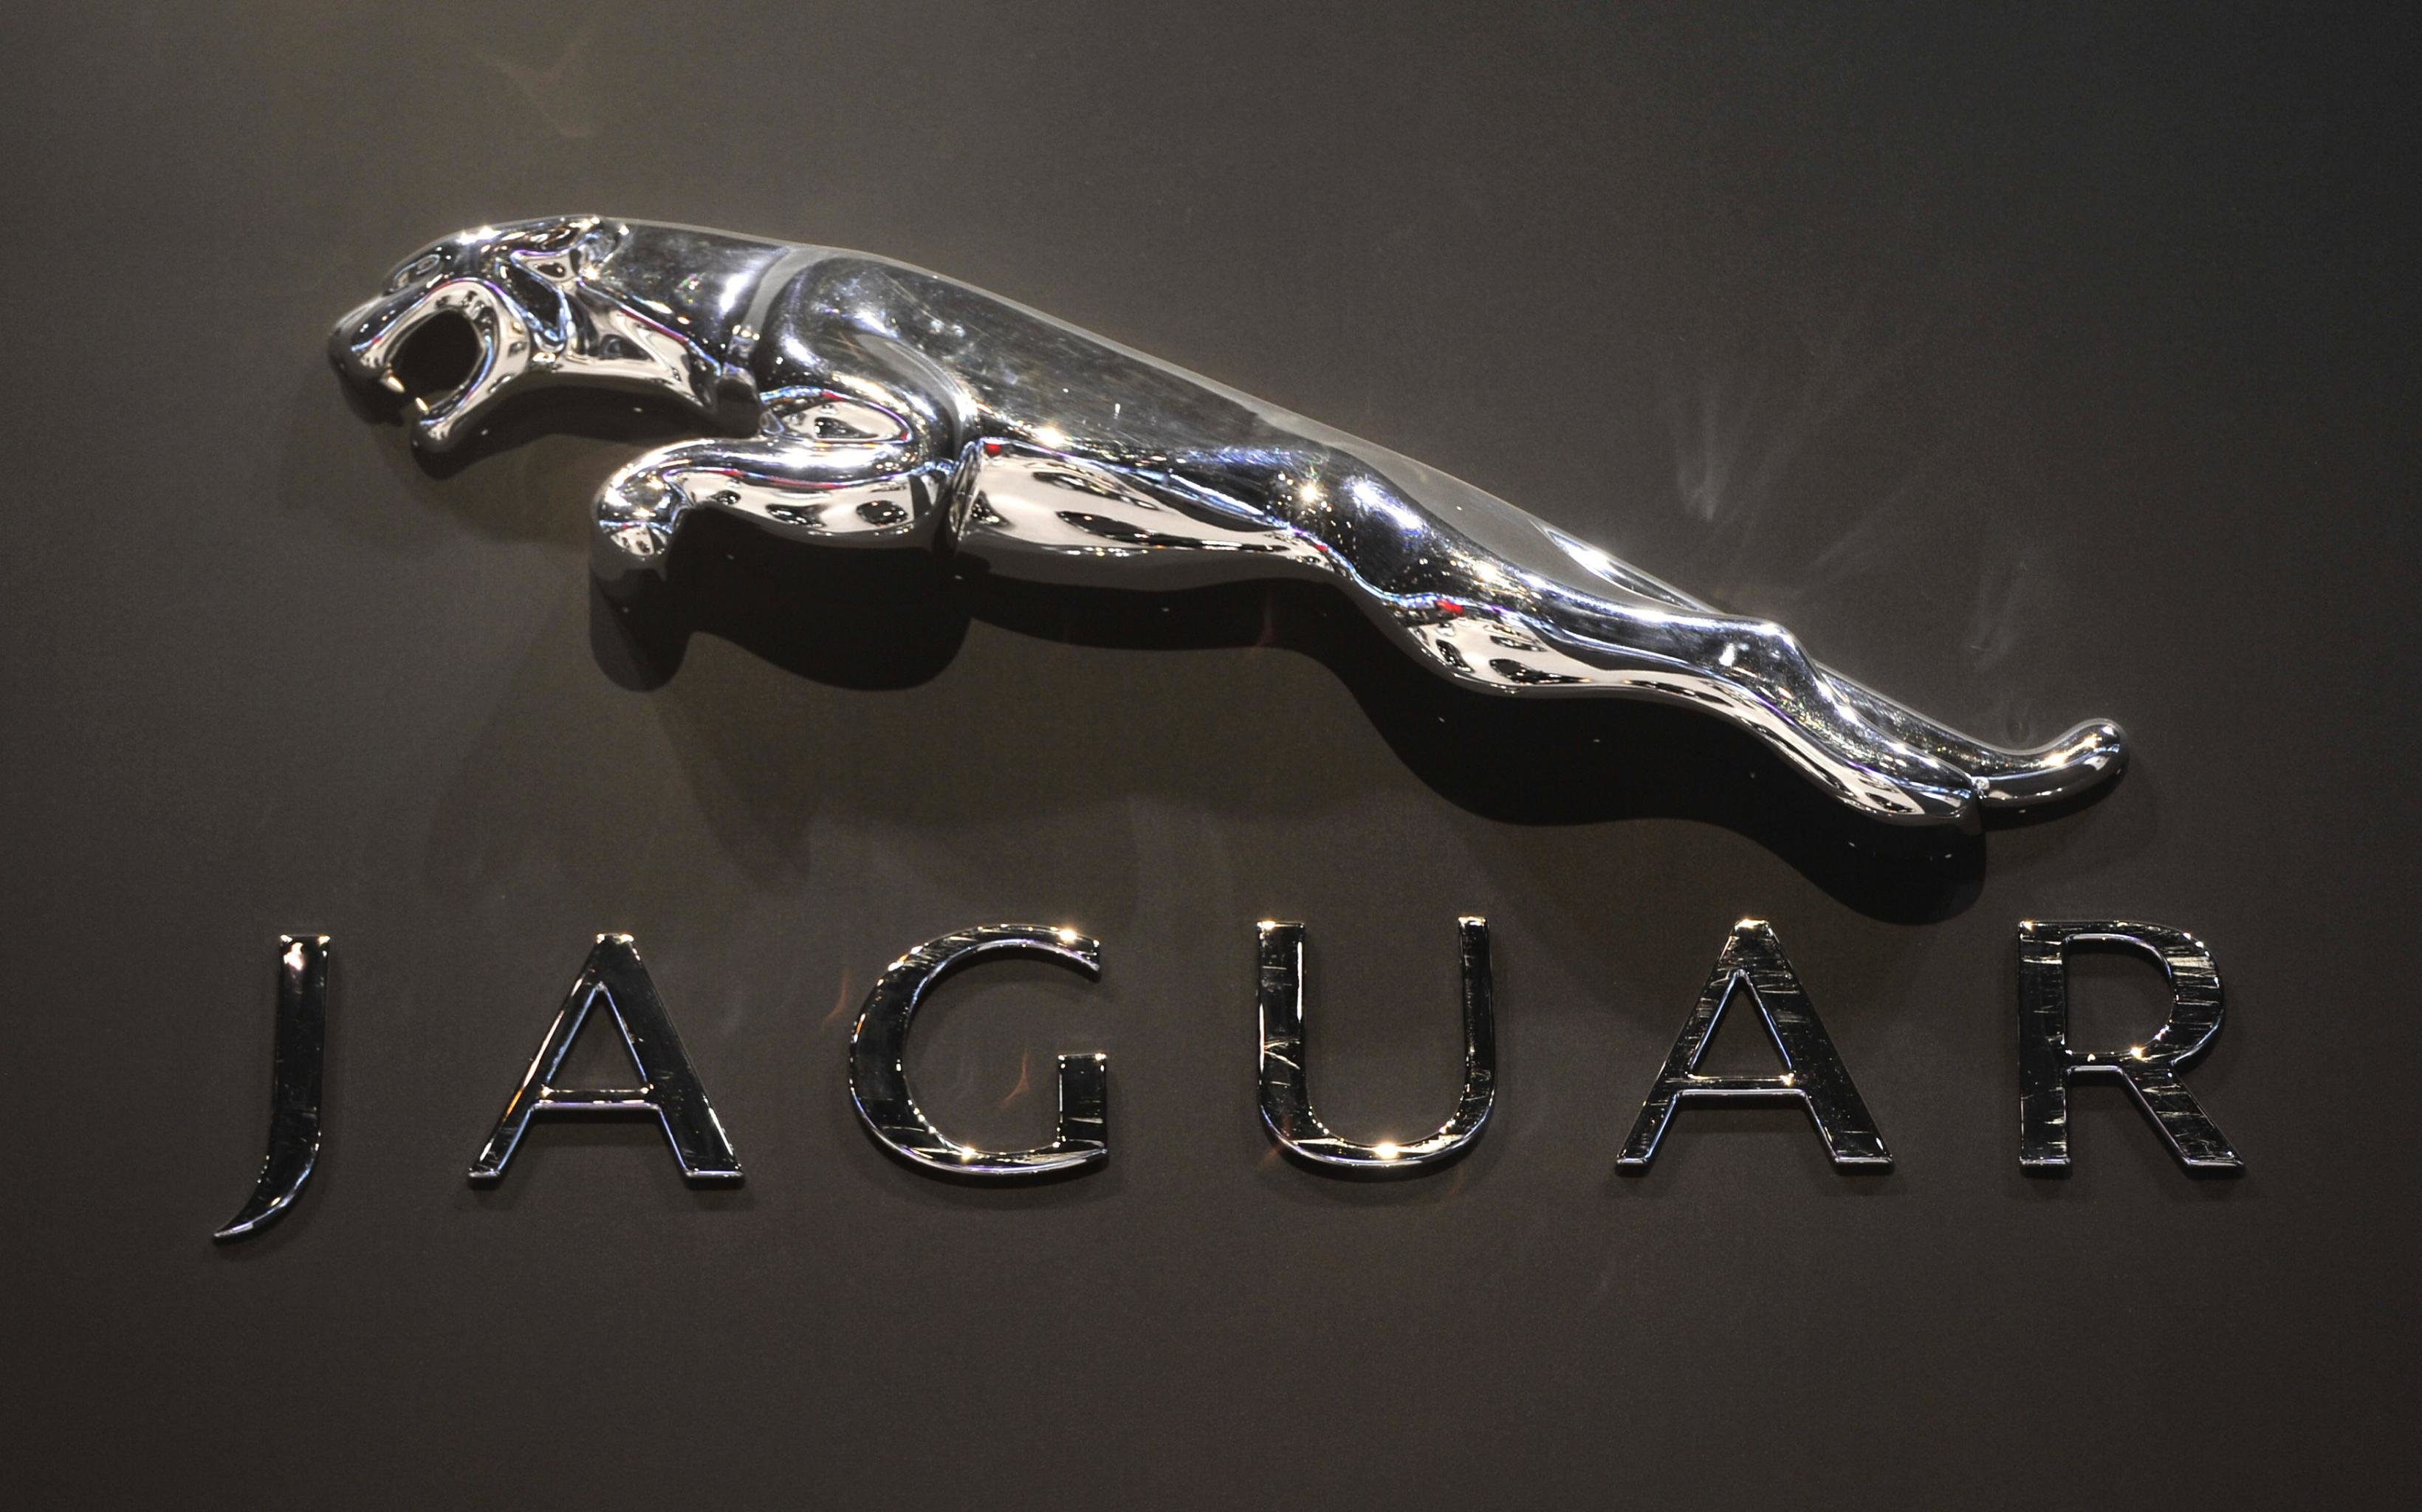 Jaguar Car Photos Free Download